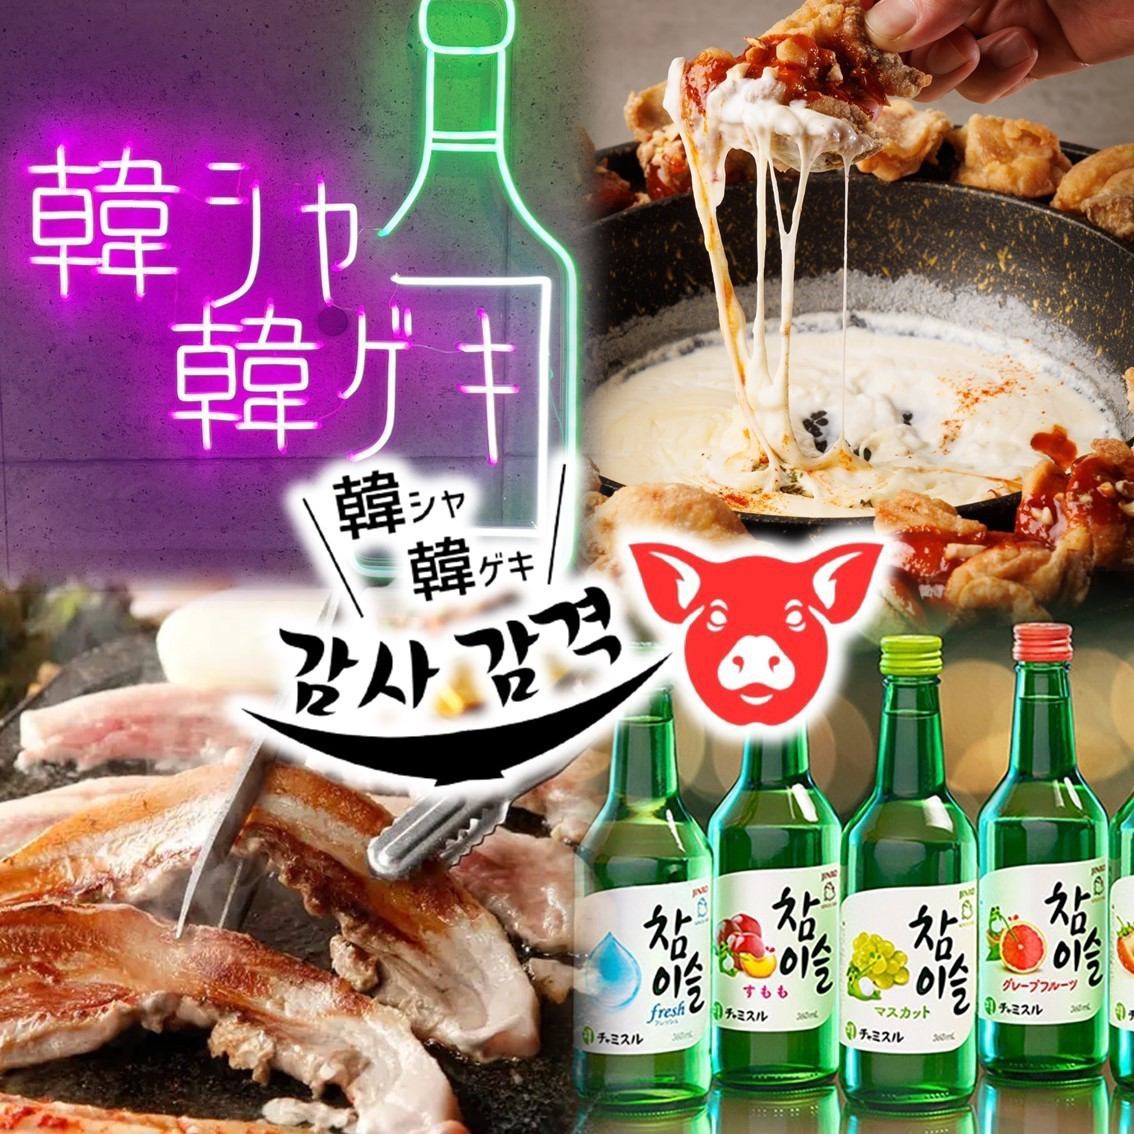 週六、週日、假日從14:00開始營業！！最適合午餐喝飲料的韓國餐廳♪